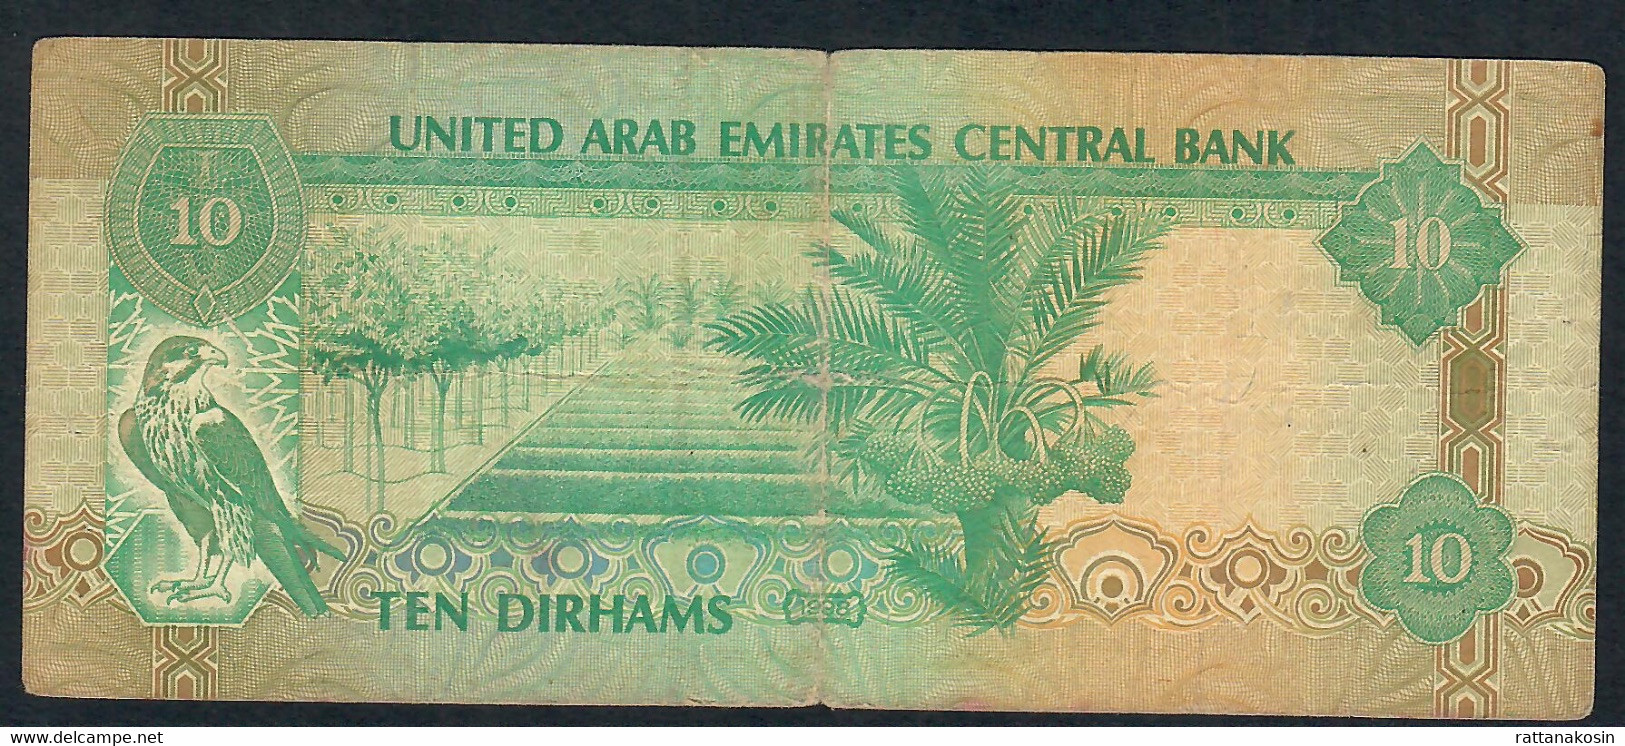 U.A.E. P20a  10 DIRHAMS  1998  VG-FINE 4 P.h. ! - Ver. Arab. Emirate